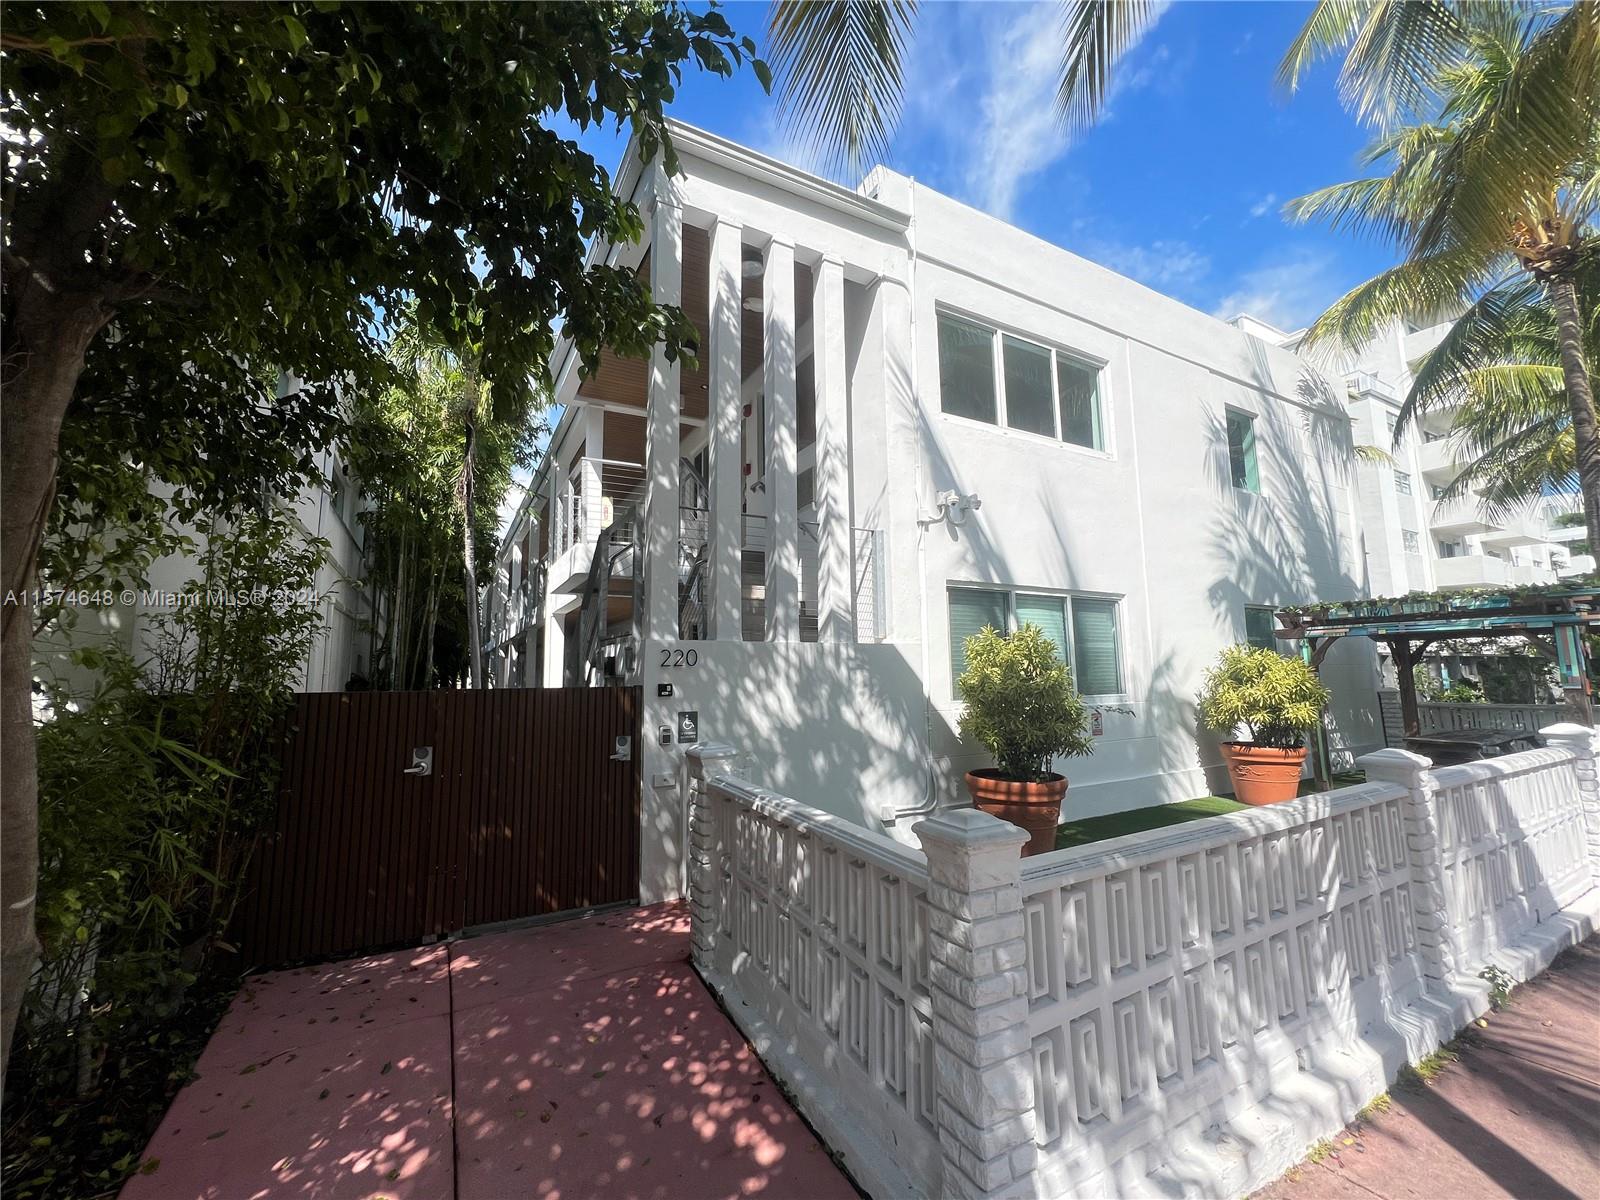 Rental Property at 220 Collins Ave 2A, Miami Beach, Miami-Dade County, Florida - Bathrooms: 1  - $2,000 MO.